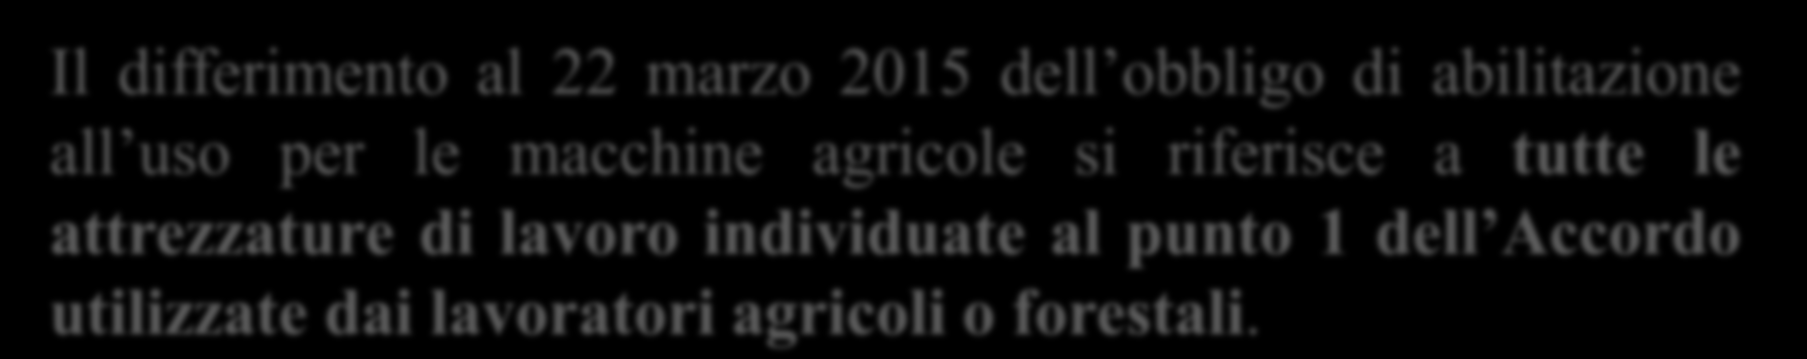 Art. 45 - bis del Decreto del Fare Definizione di Macchine agricole Il differimento al 22 marzo 2015 dell obbligo di abilitazione all uso per le